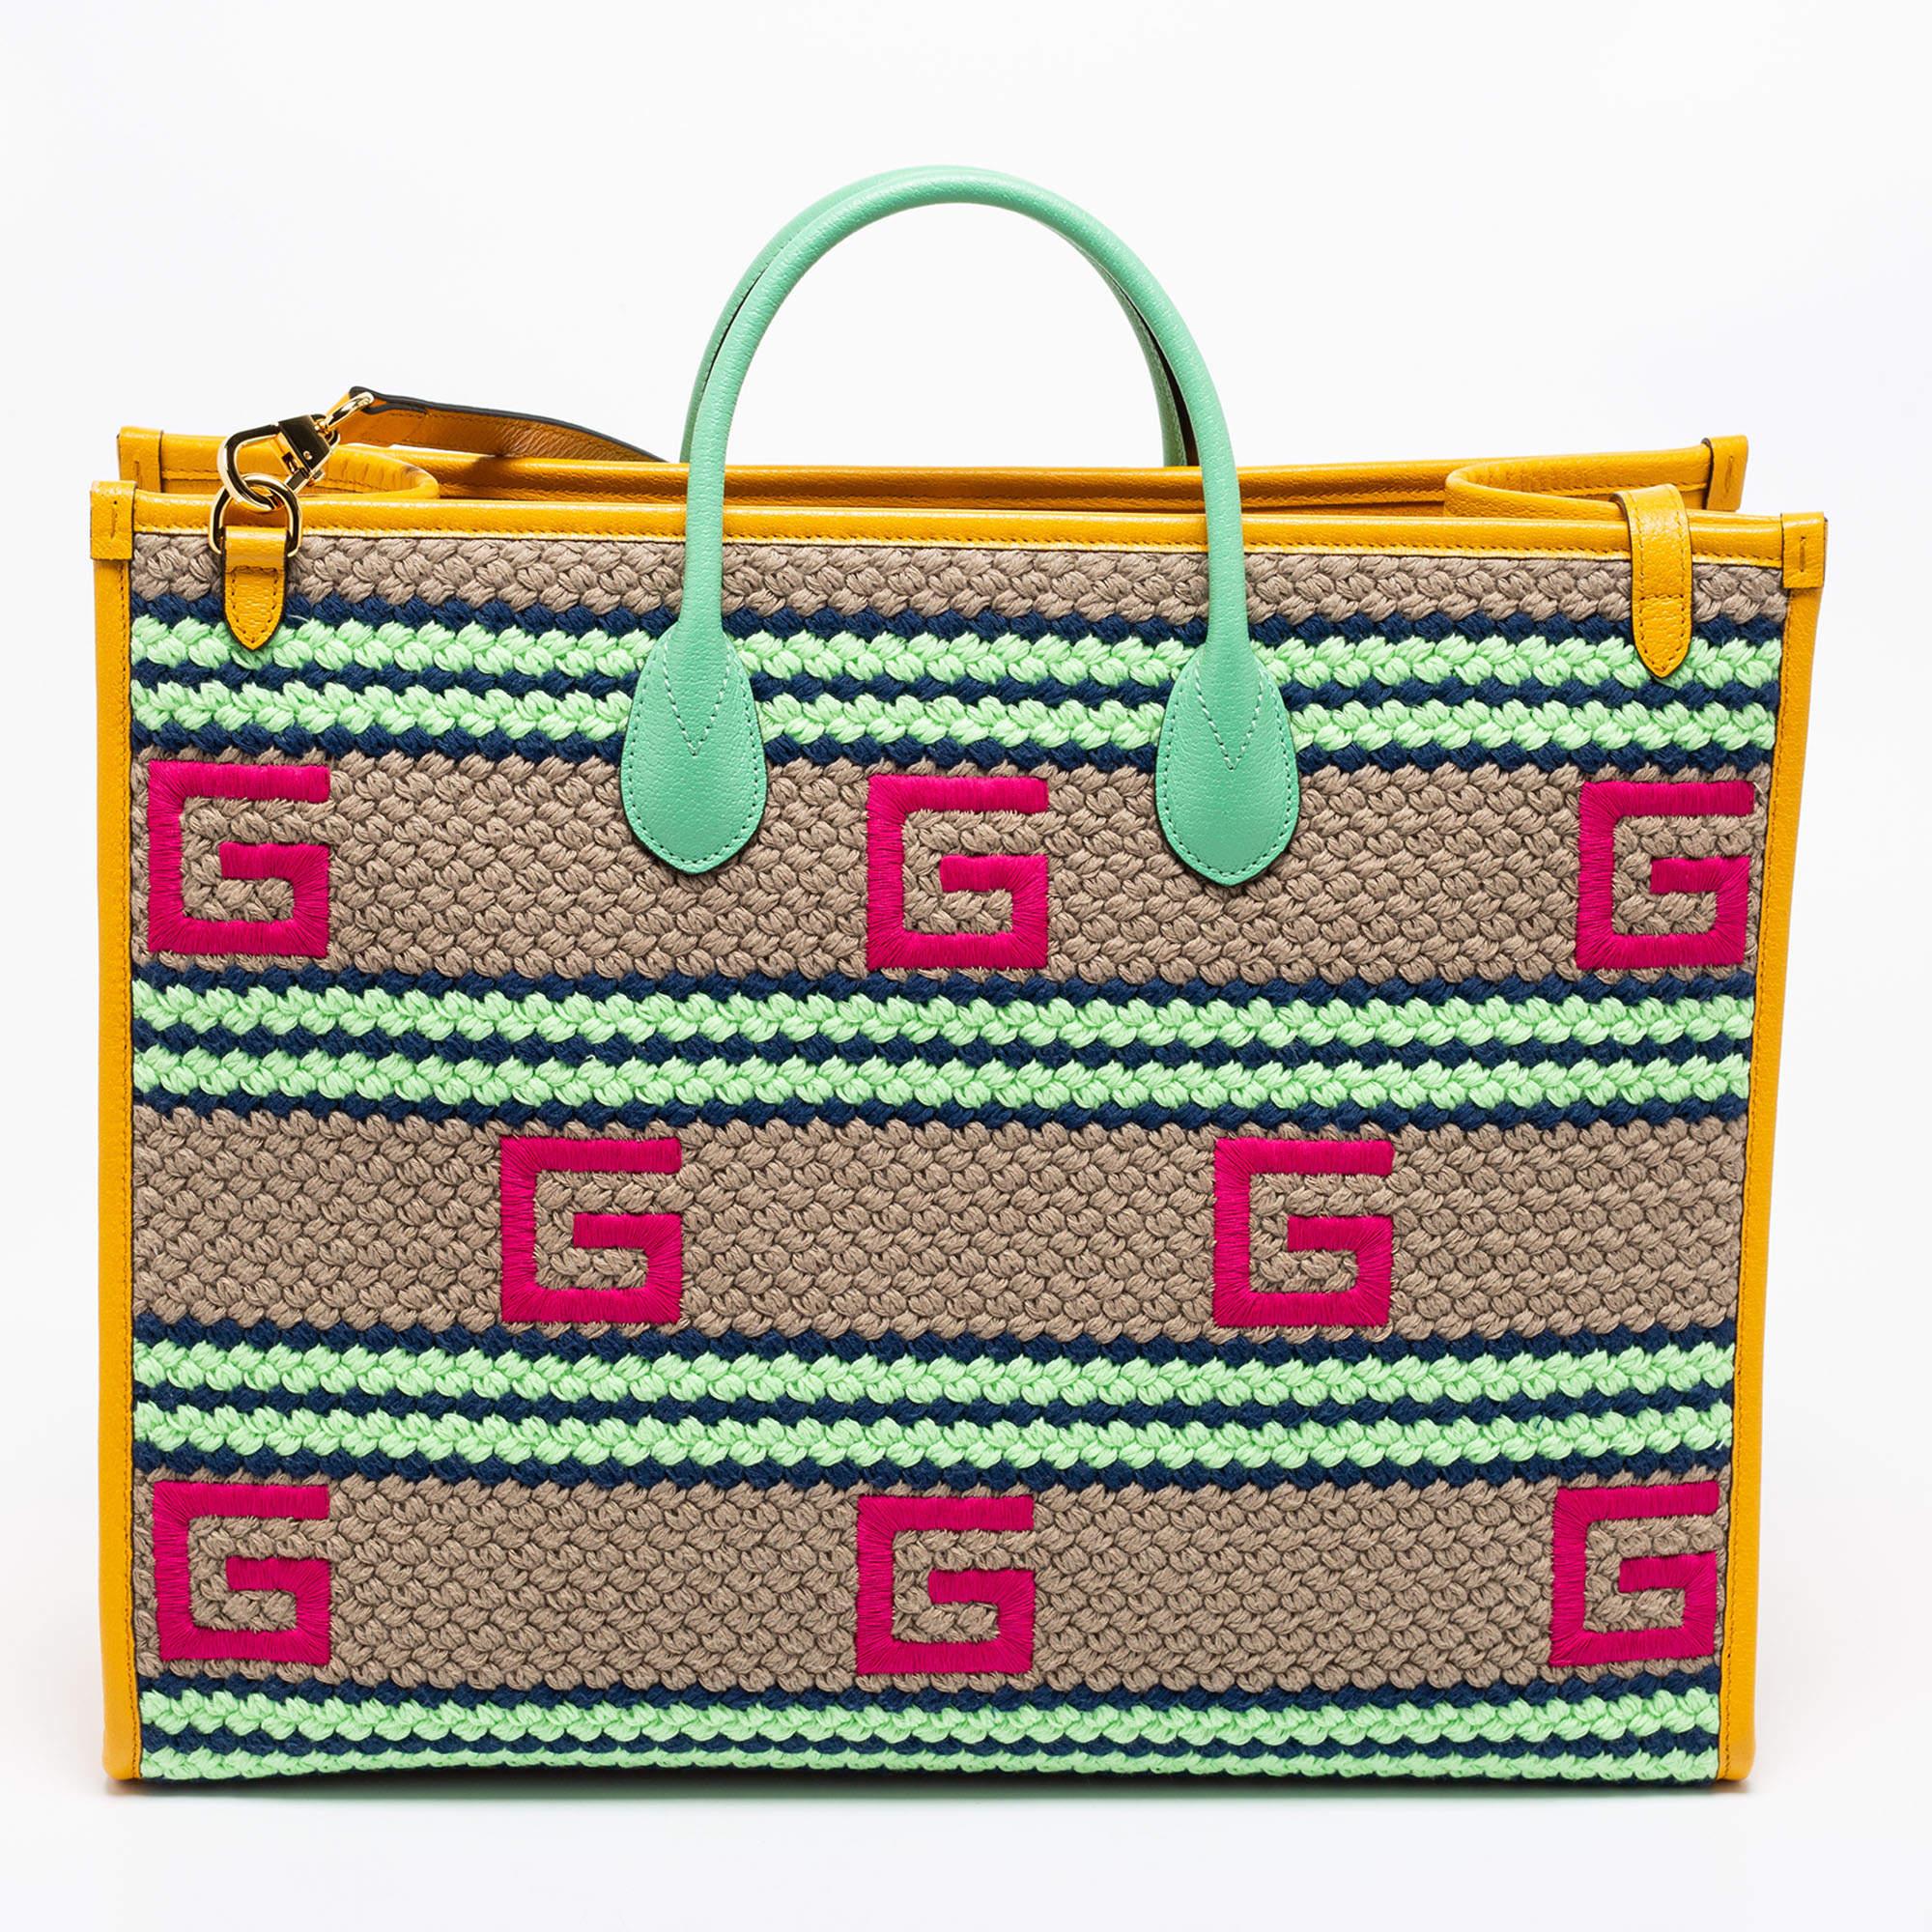 Gucci Capri Tote - For Sale on 1stDibs | gucci capri bag